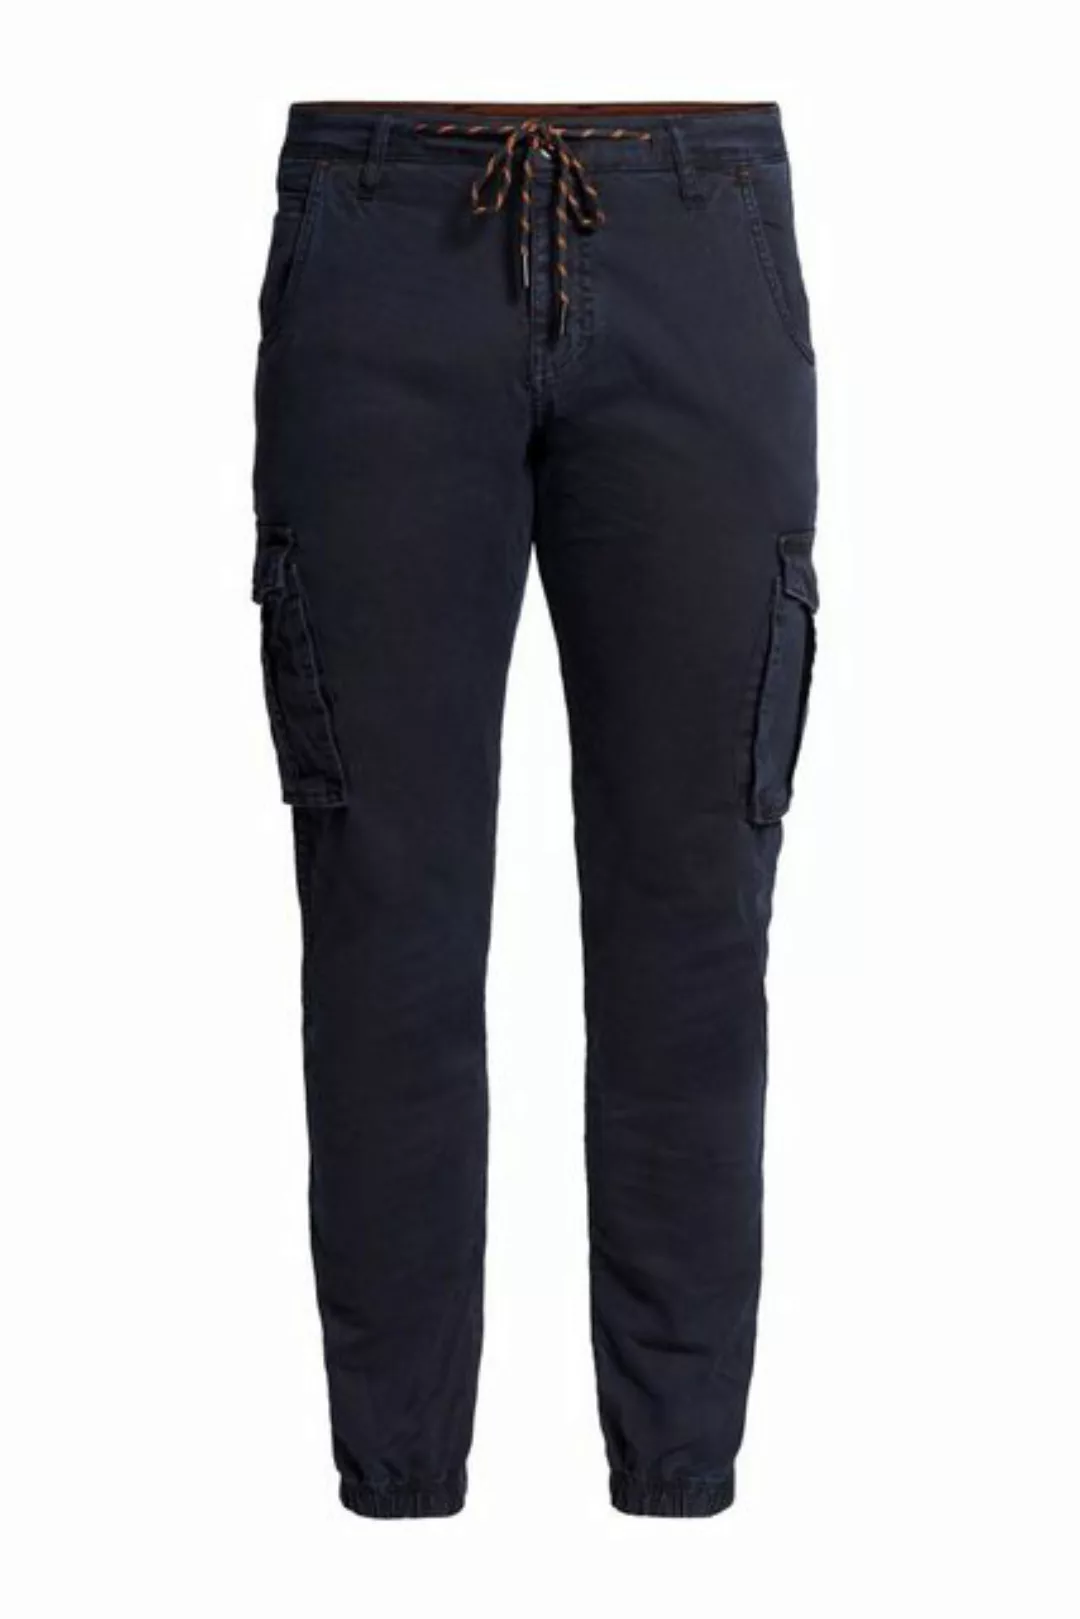 Zhrill 7/8-Jeans Cargohose MICHA Black angenehmer Tragekomfort günstig online kaufen